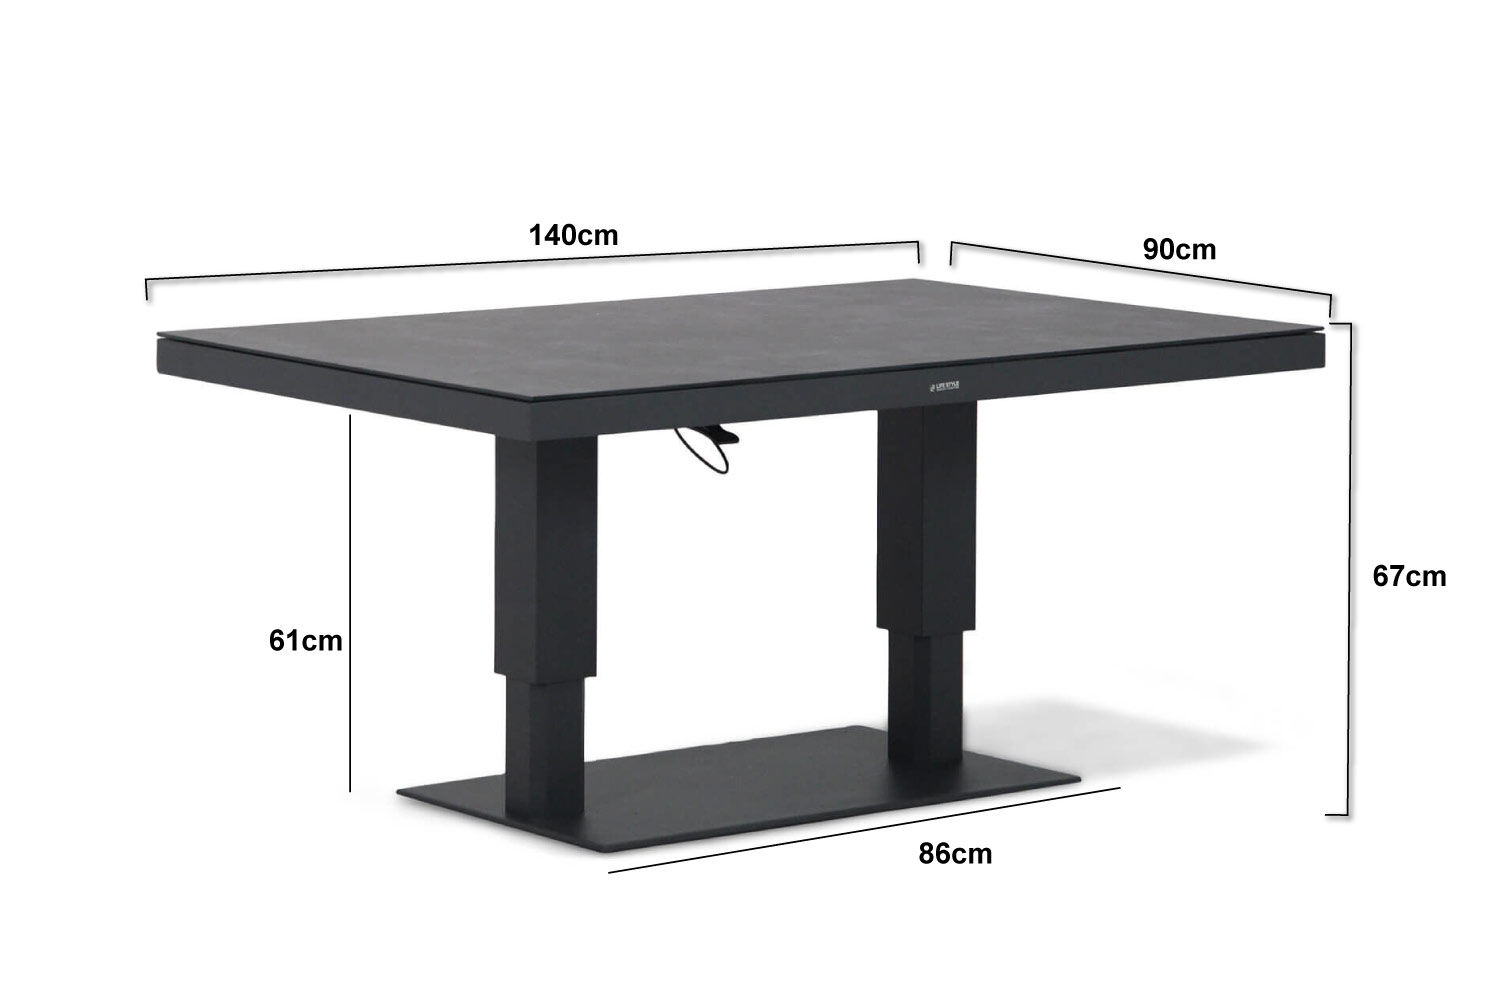 Armoedig Munching slecht humeur Lifestyle Versatile in hoogte verstelbare tafel 140x80cm